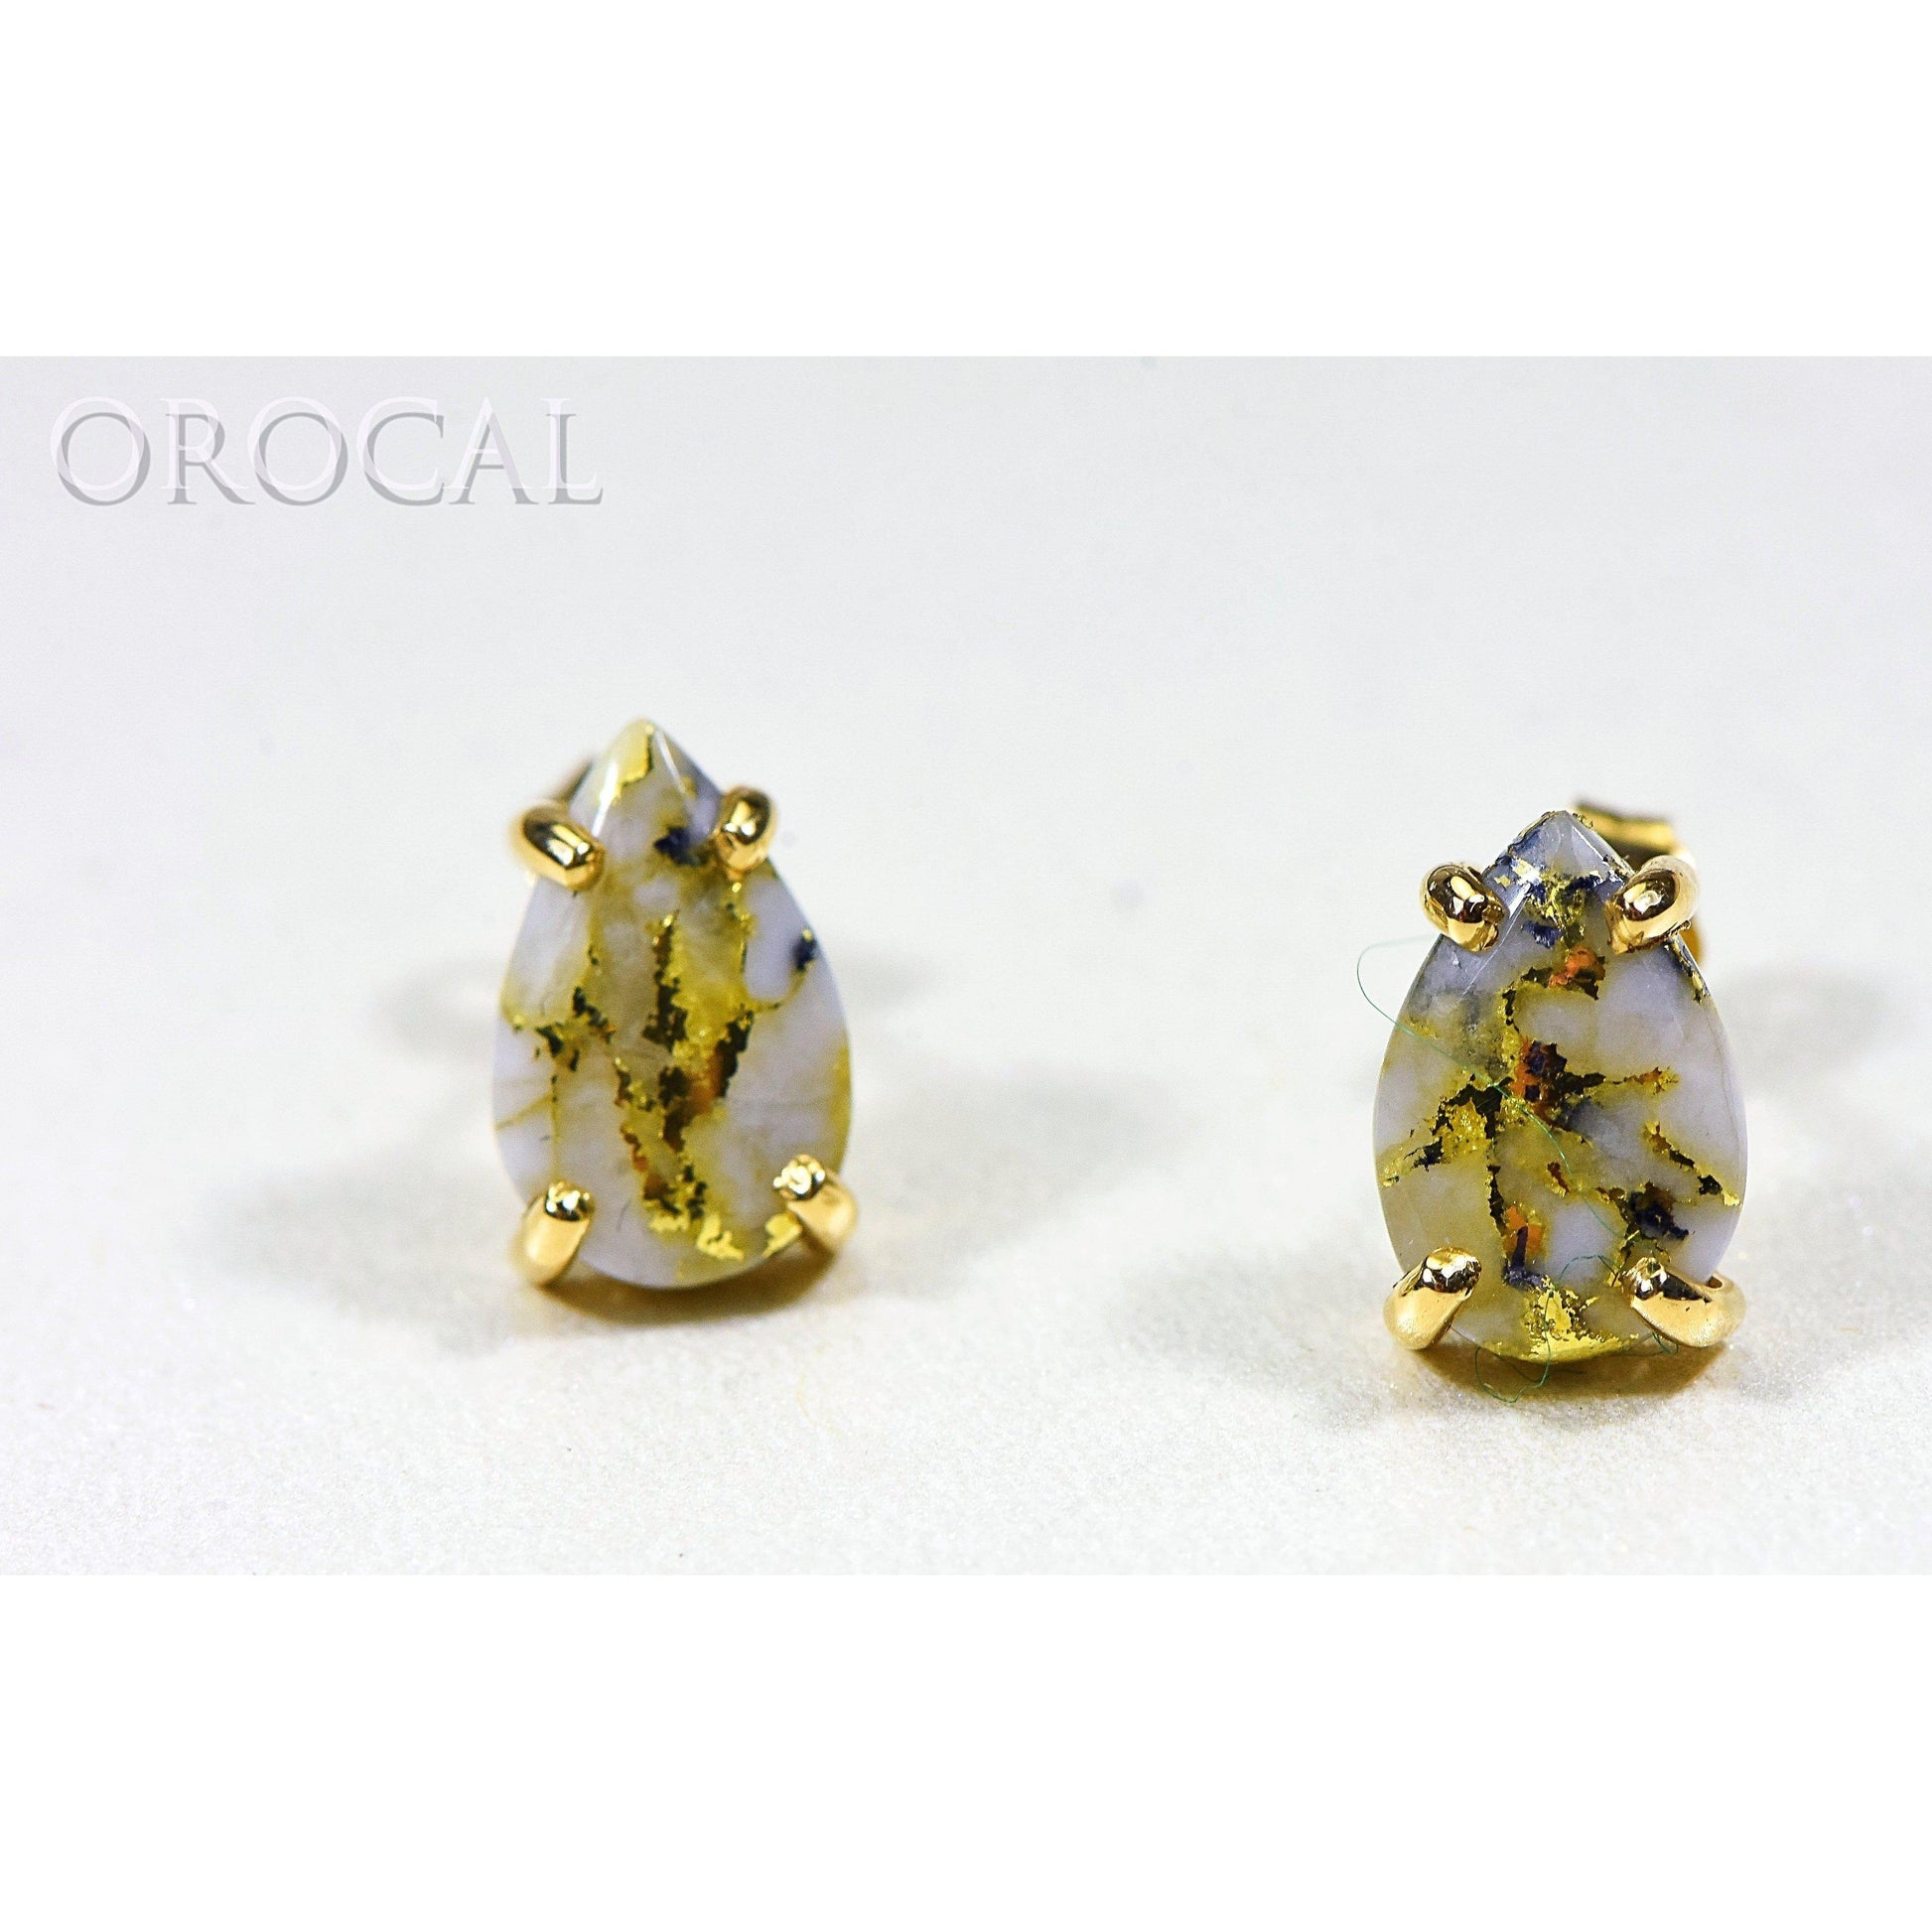 Gold Quartz Earrings Post Backs - E10*7Q-Destination Gold Detectors